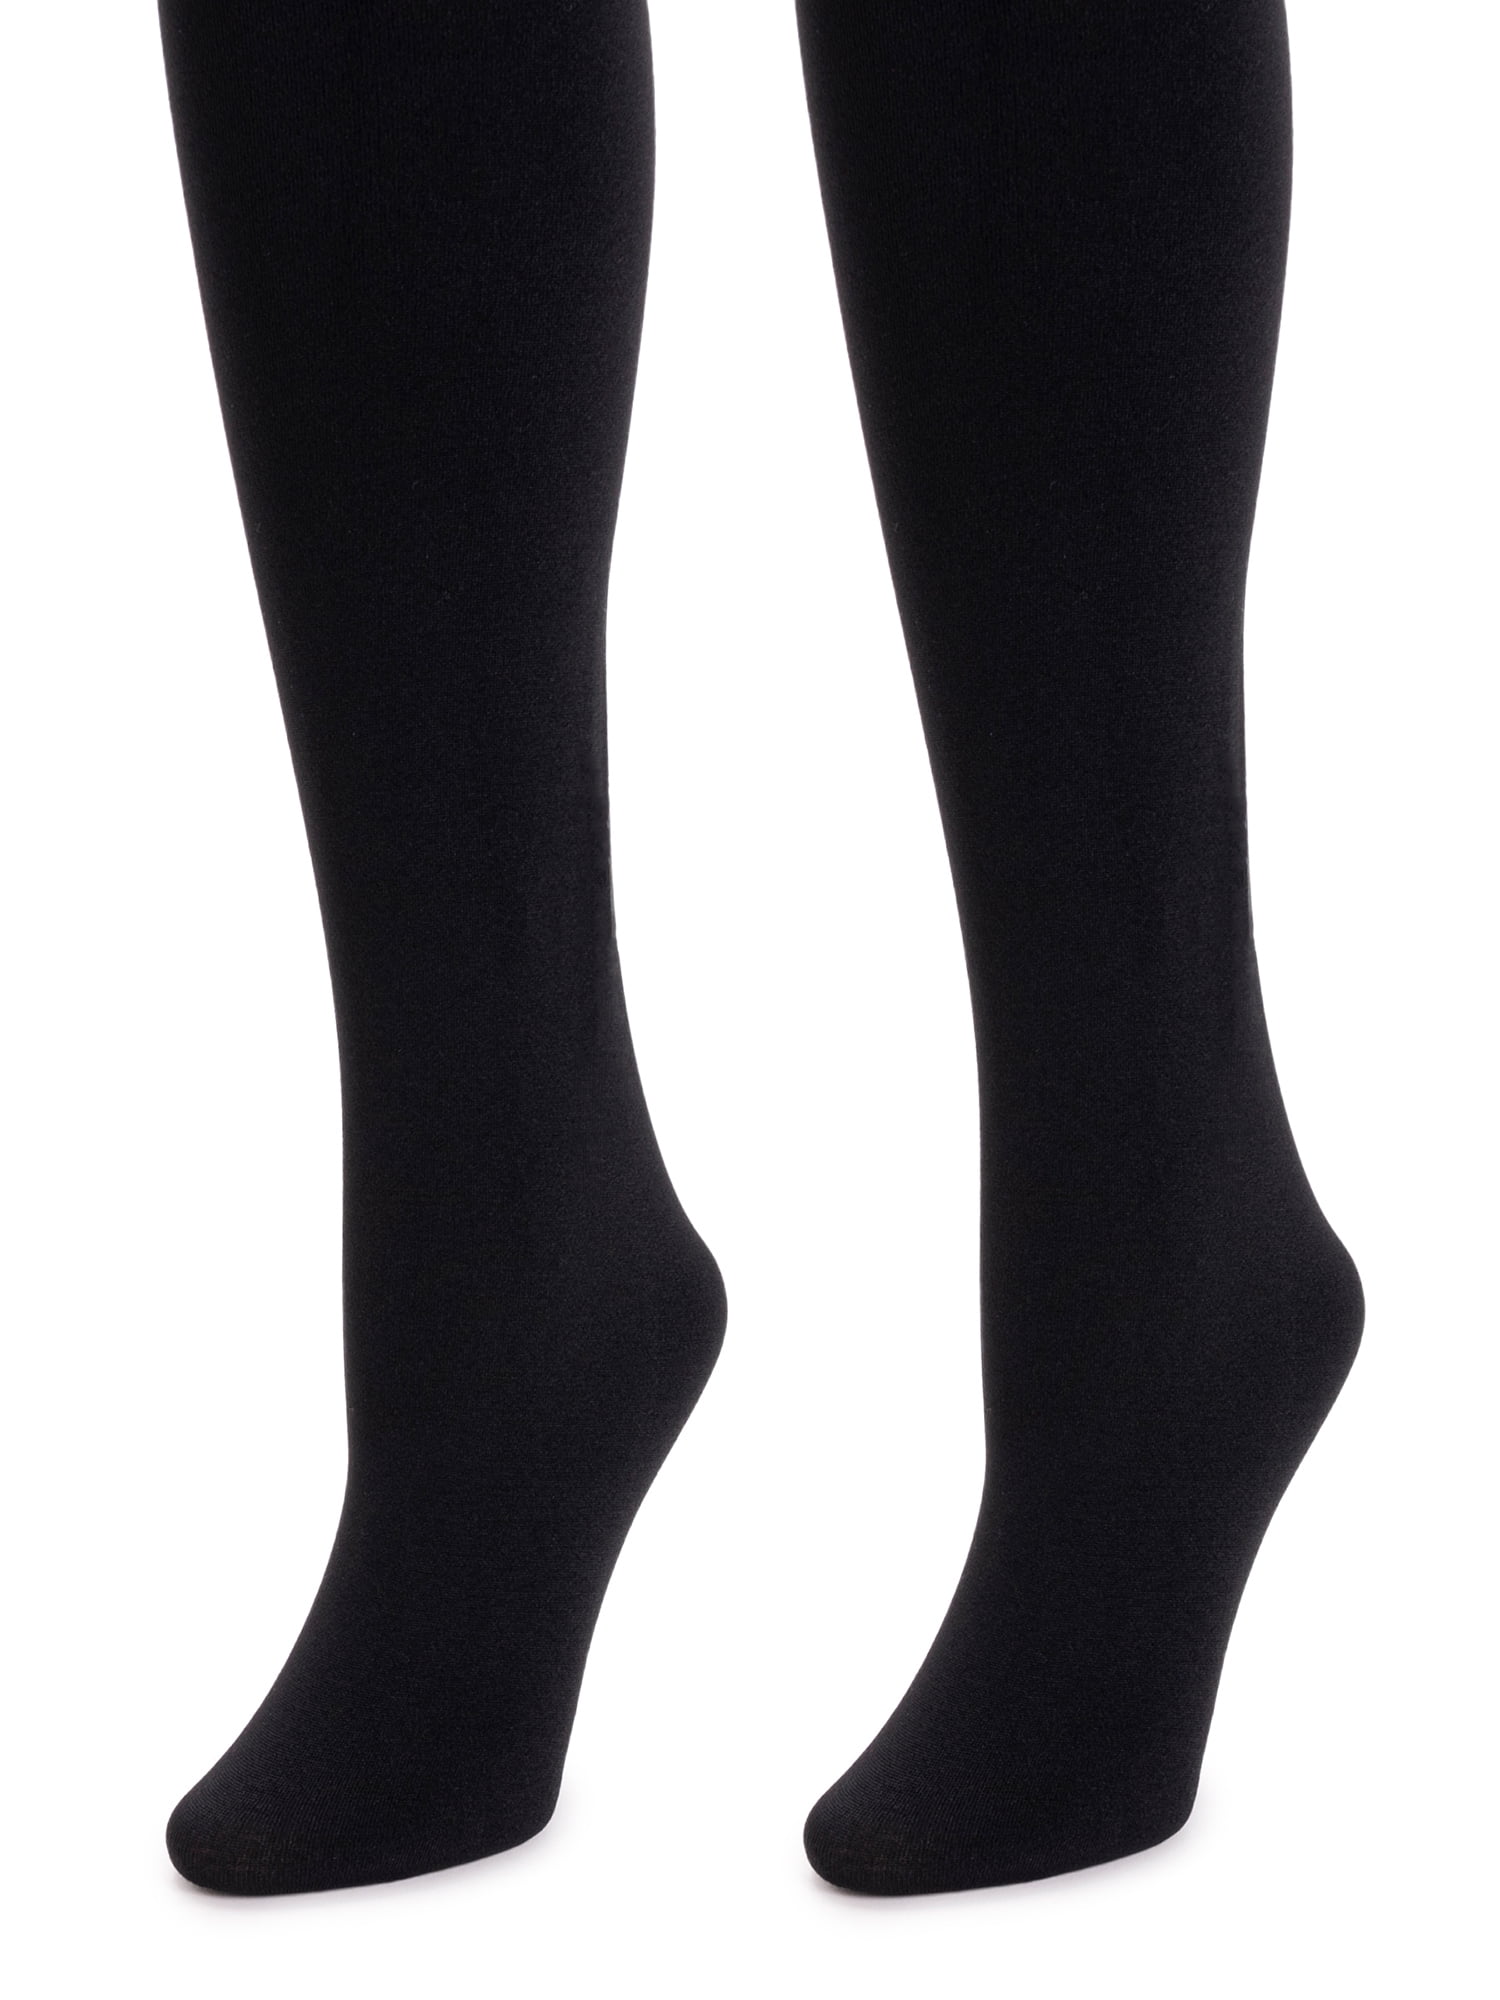 2 x Ladie's Silky Thermal Knee High Pop Socks Fleece Lined Black 200 Denier